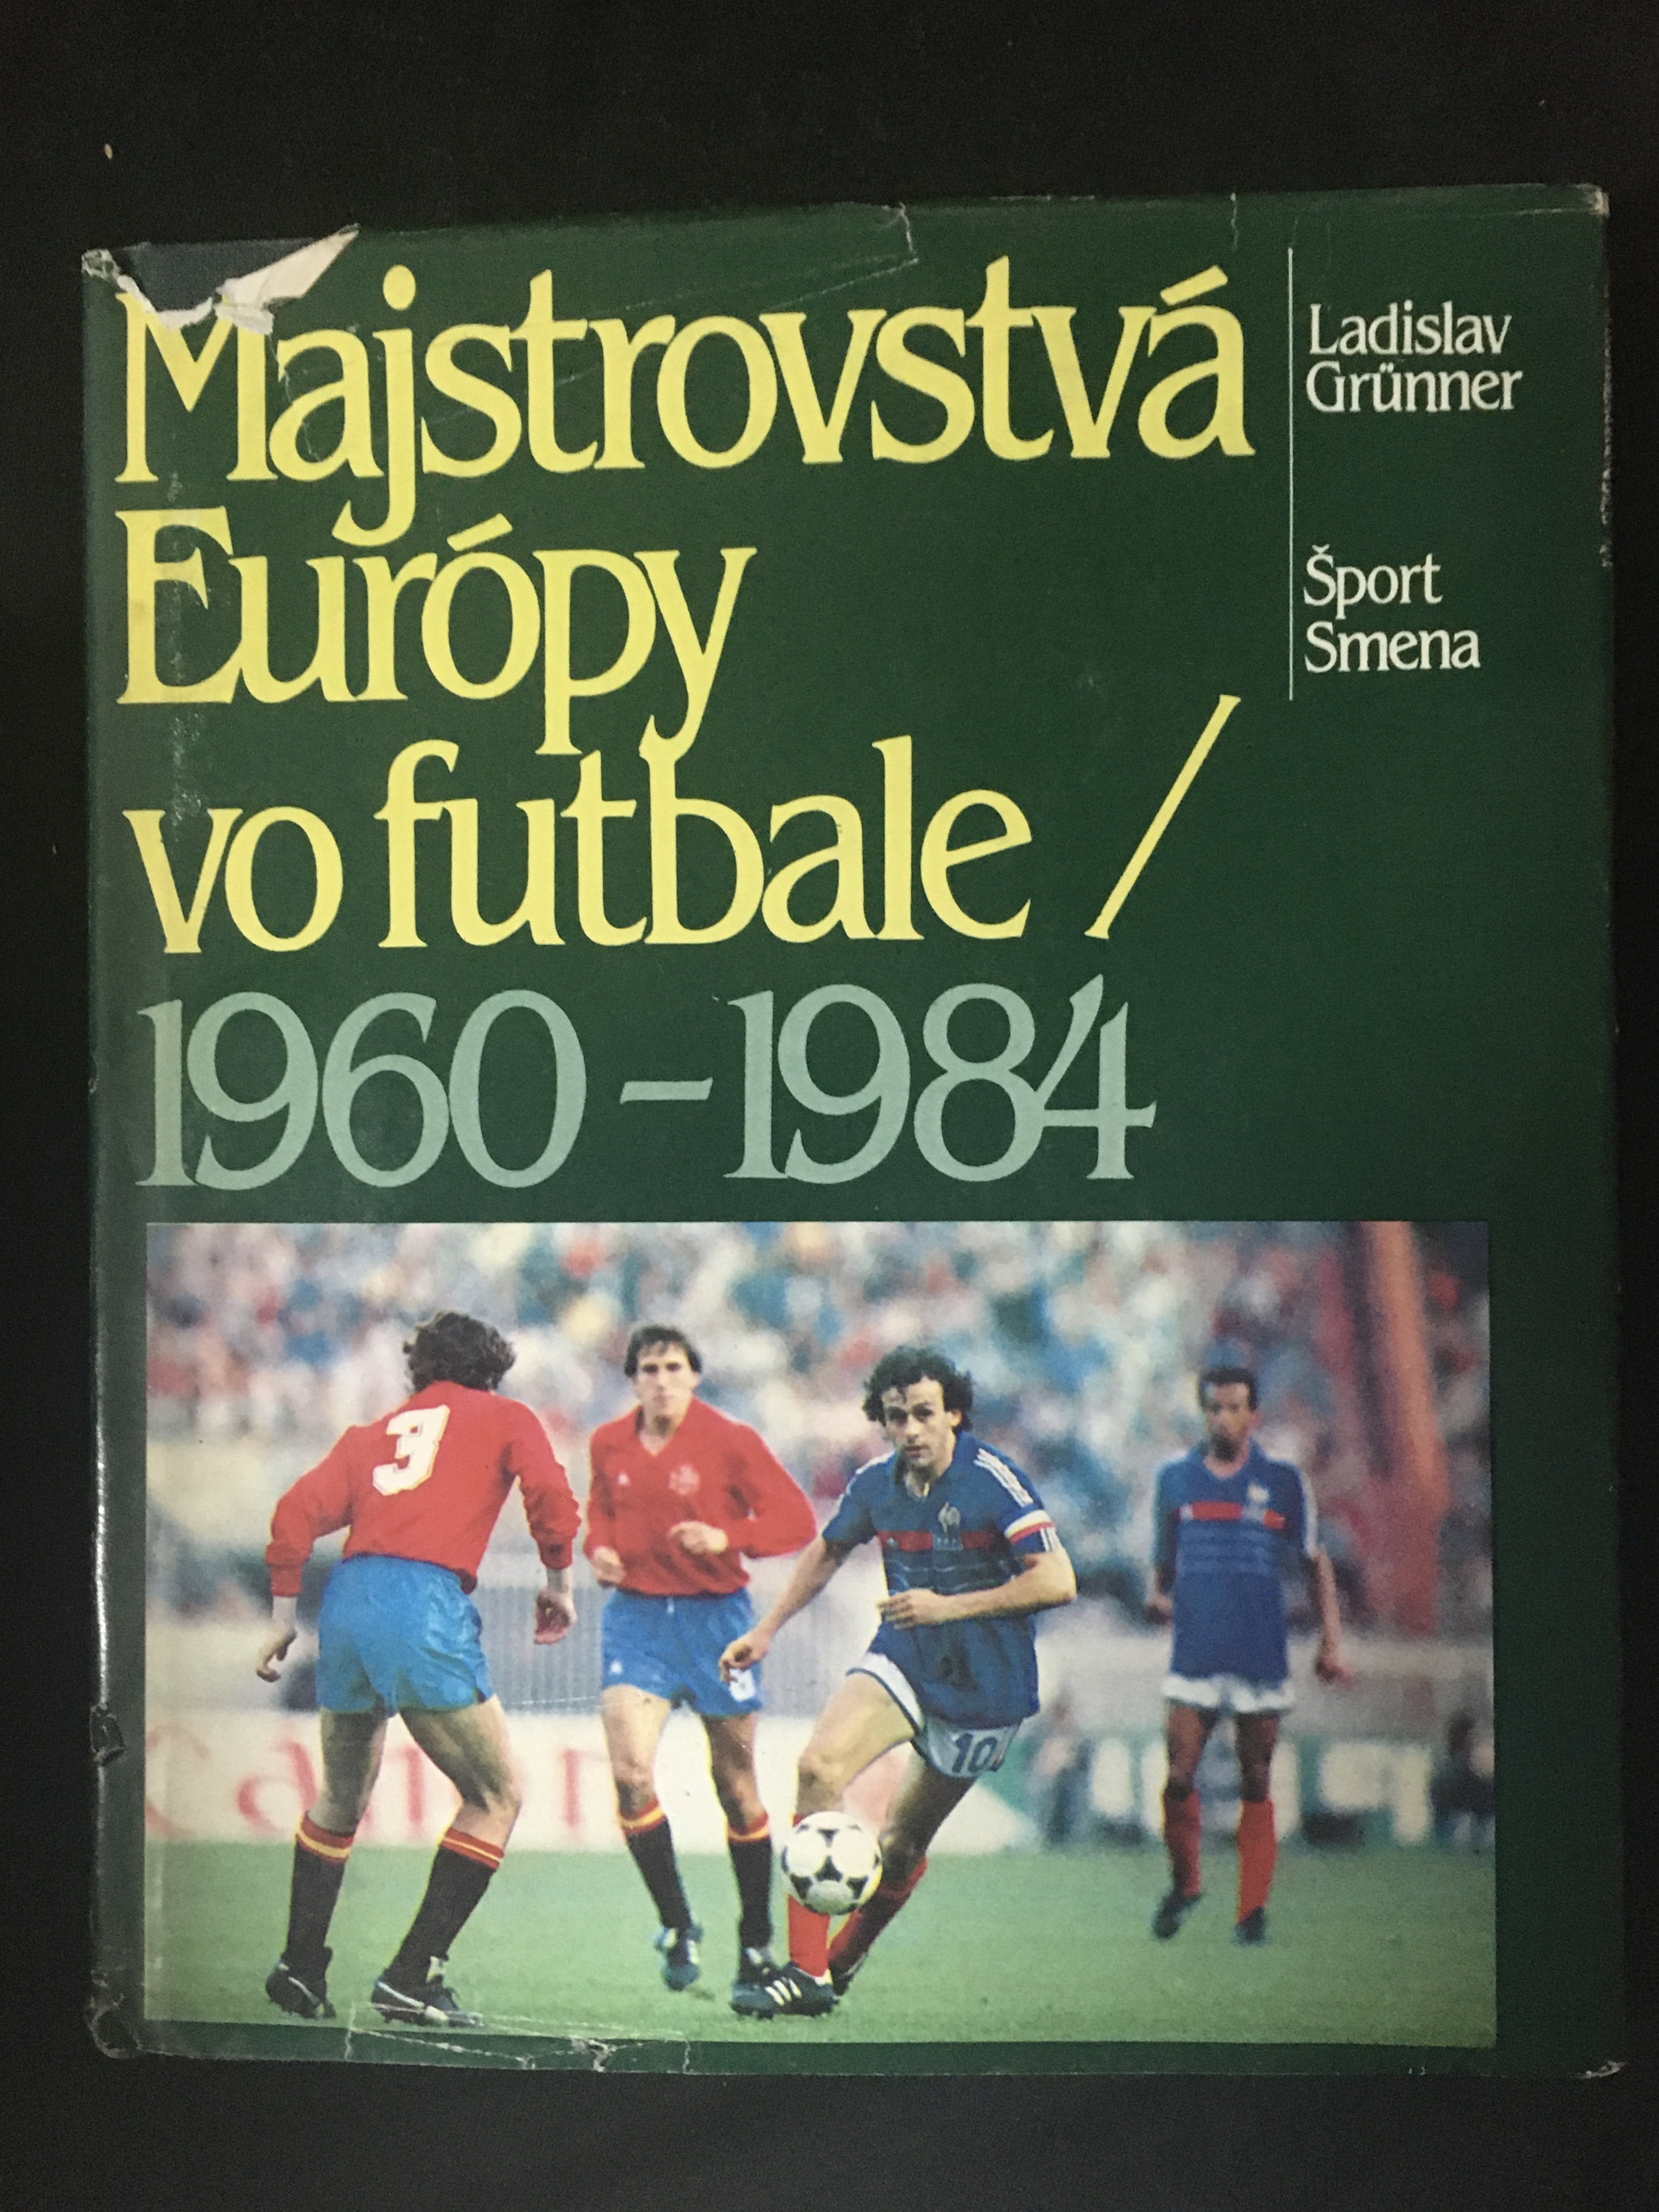 Ladislav Grünner - Majstrovstvá Európy vo futbale 1960-1984